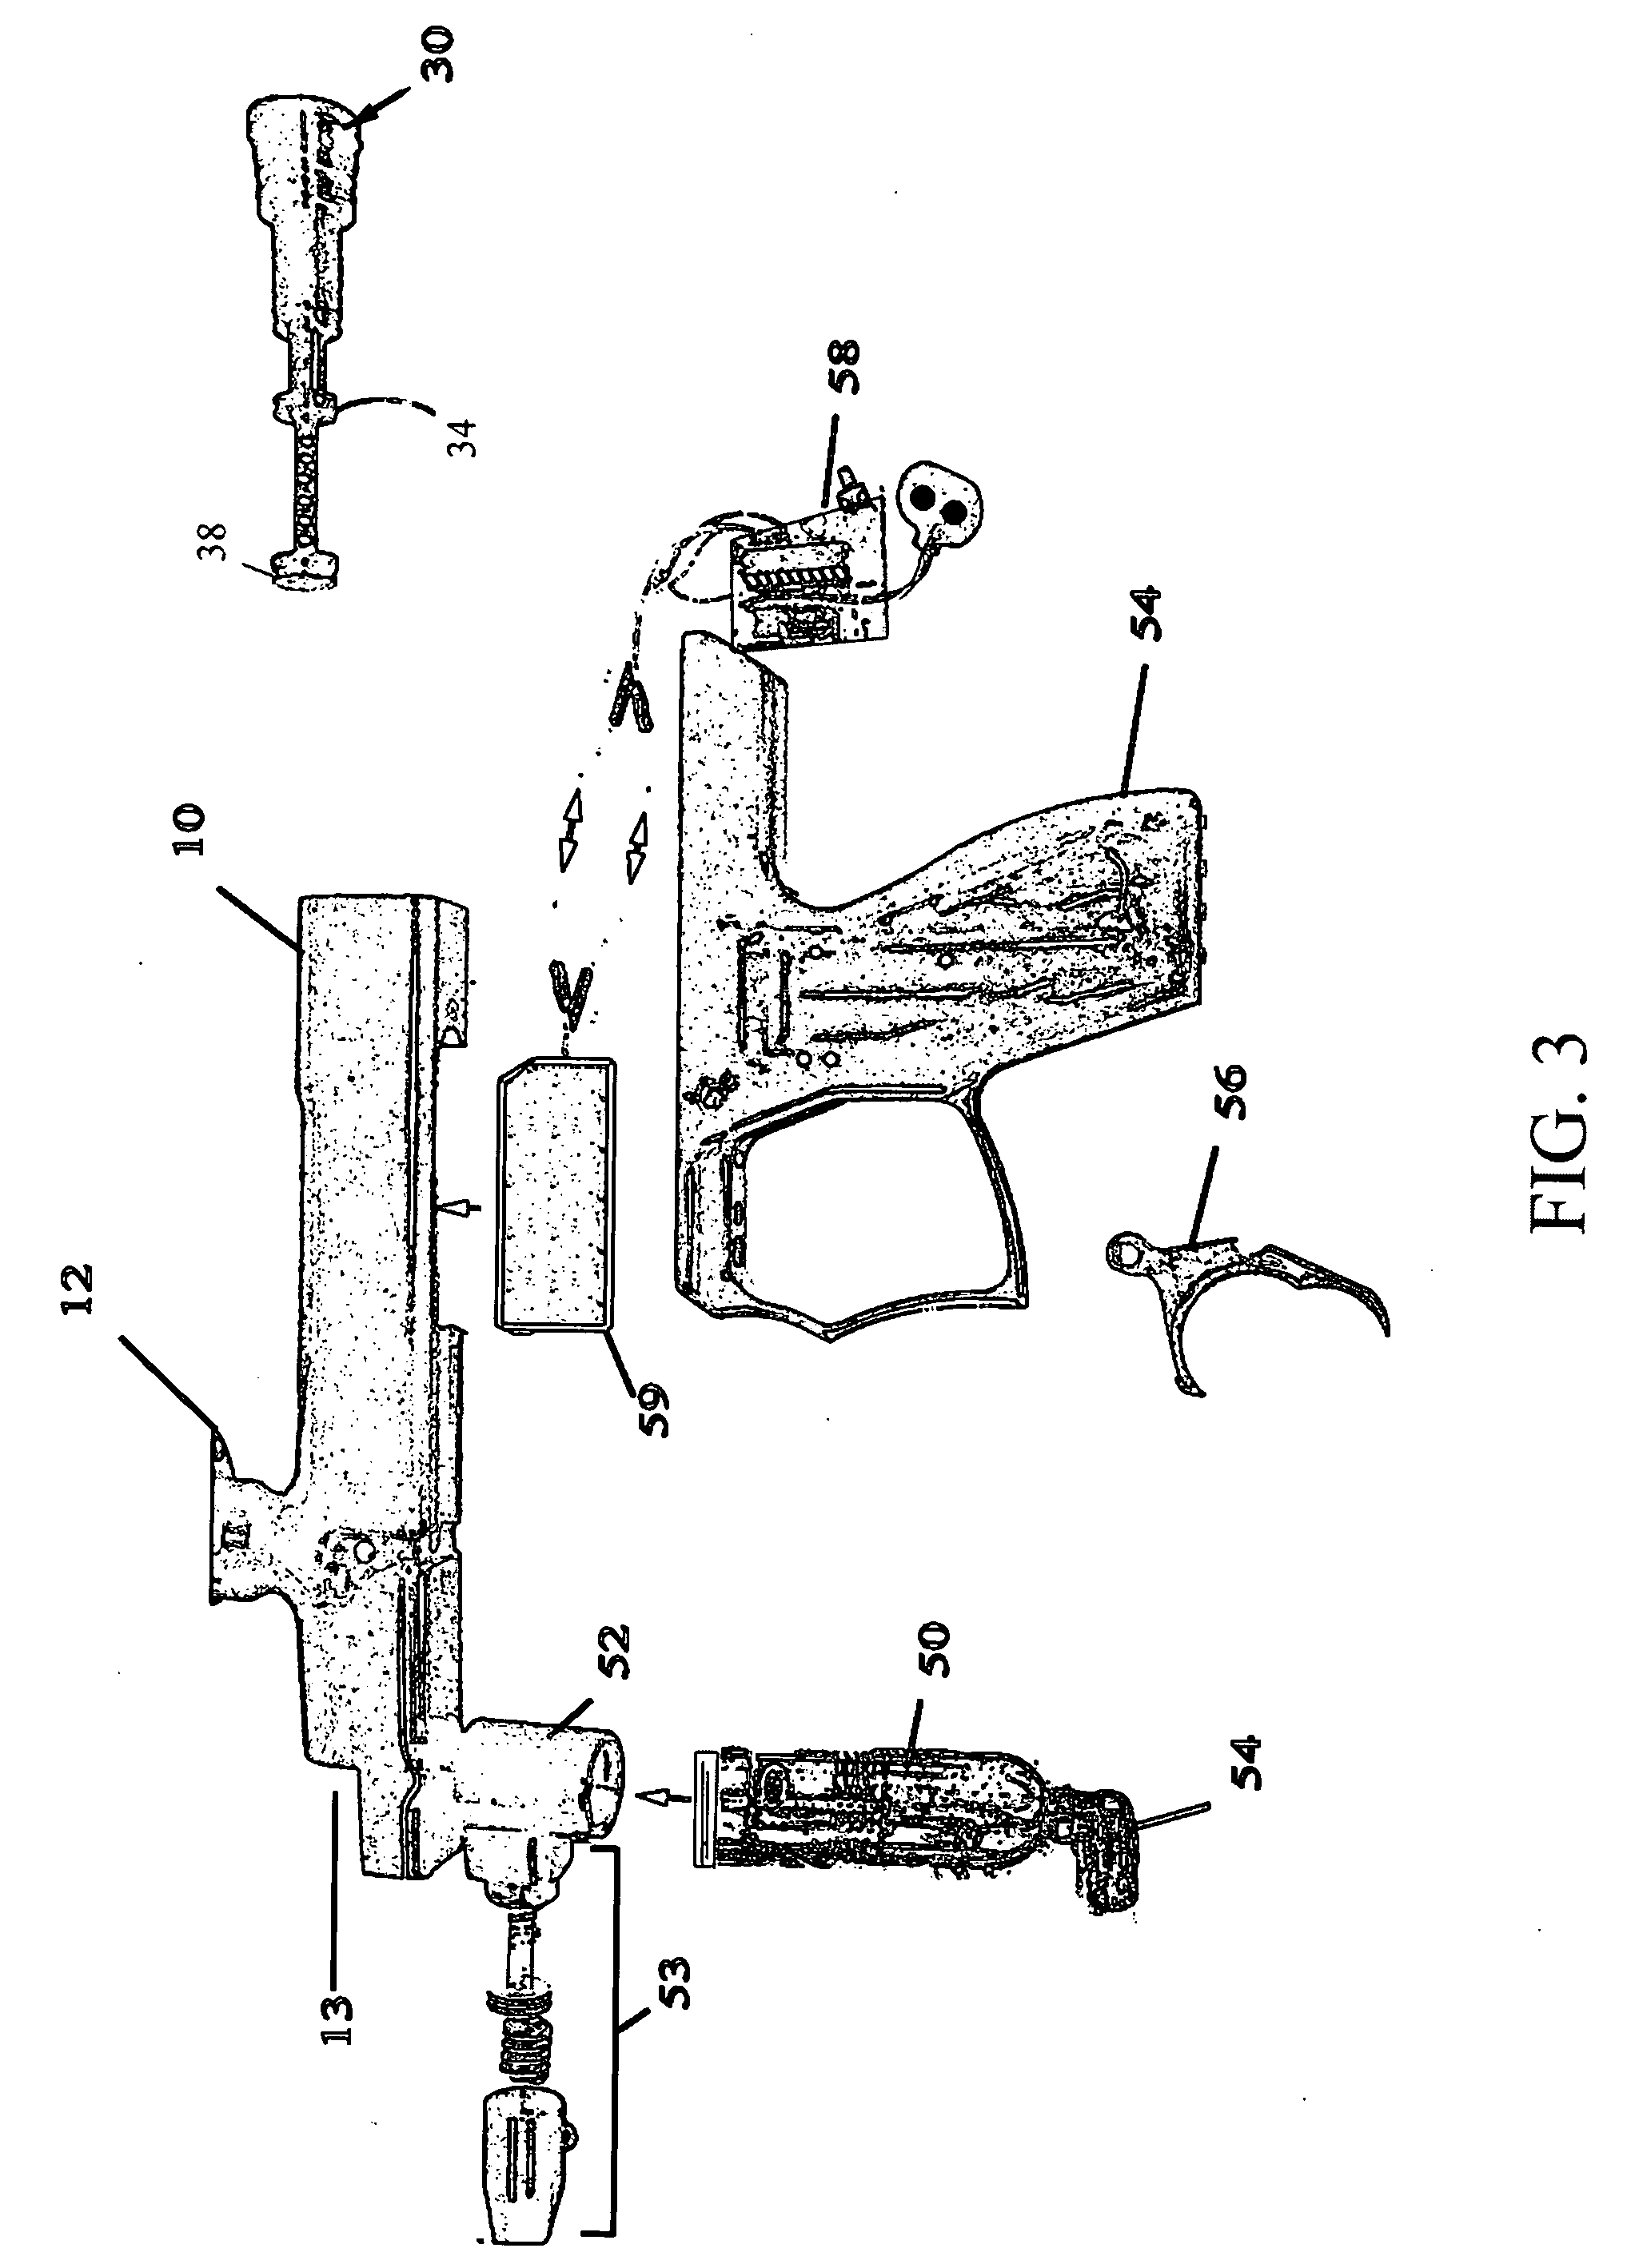 Paintball firing mechanism